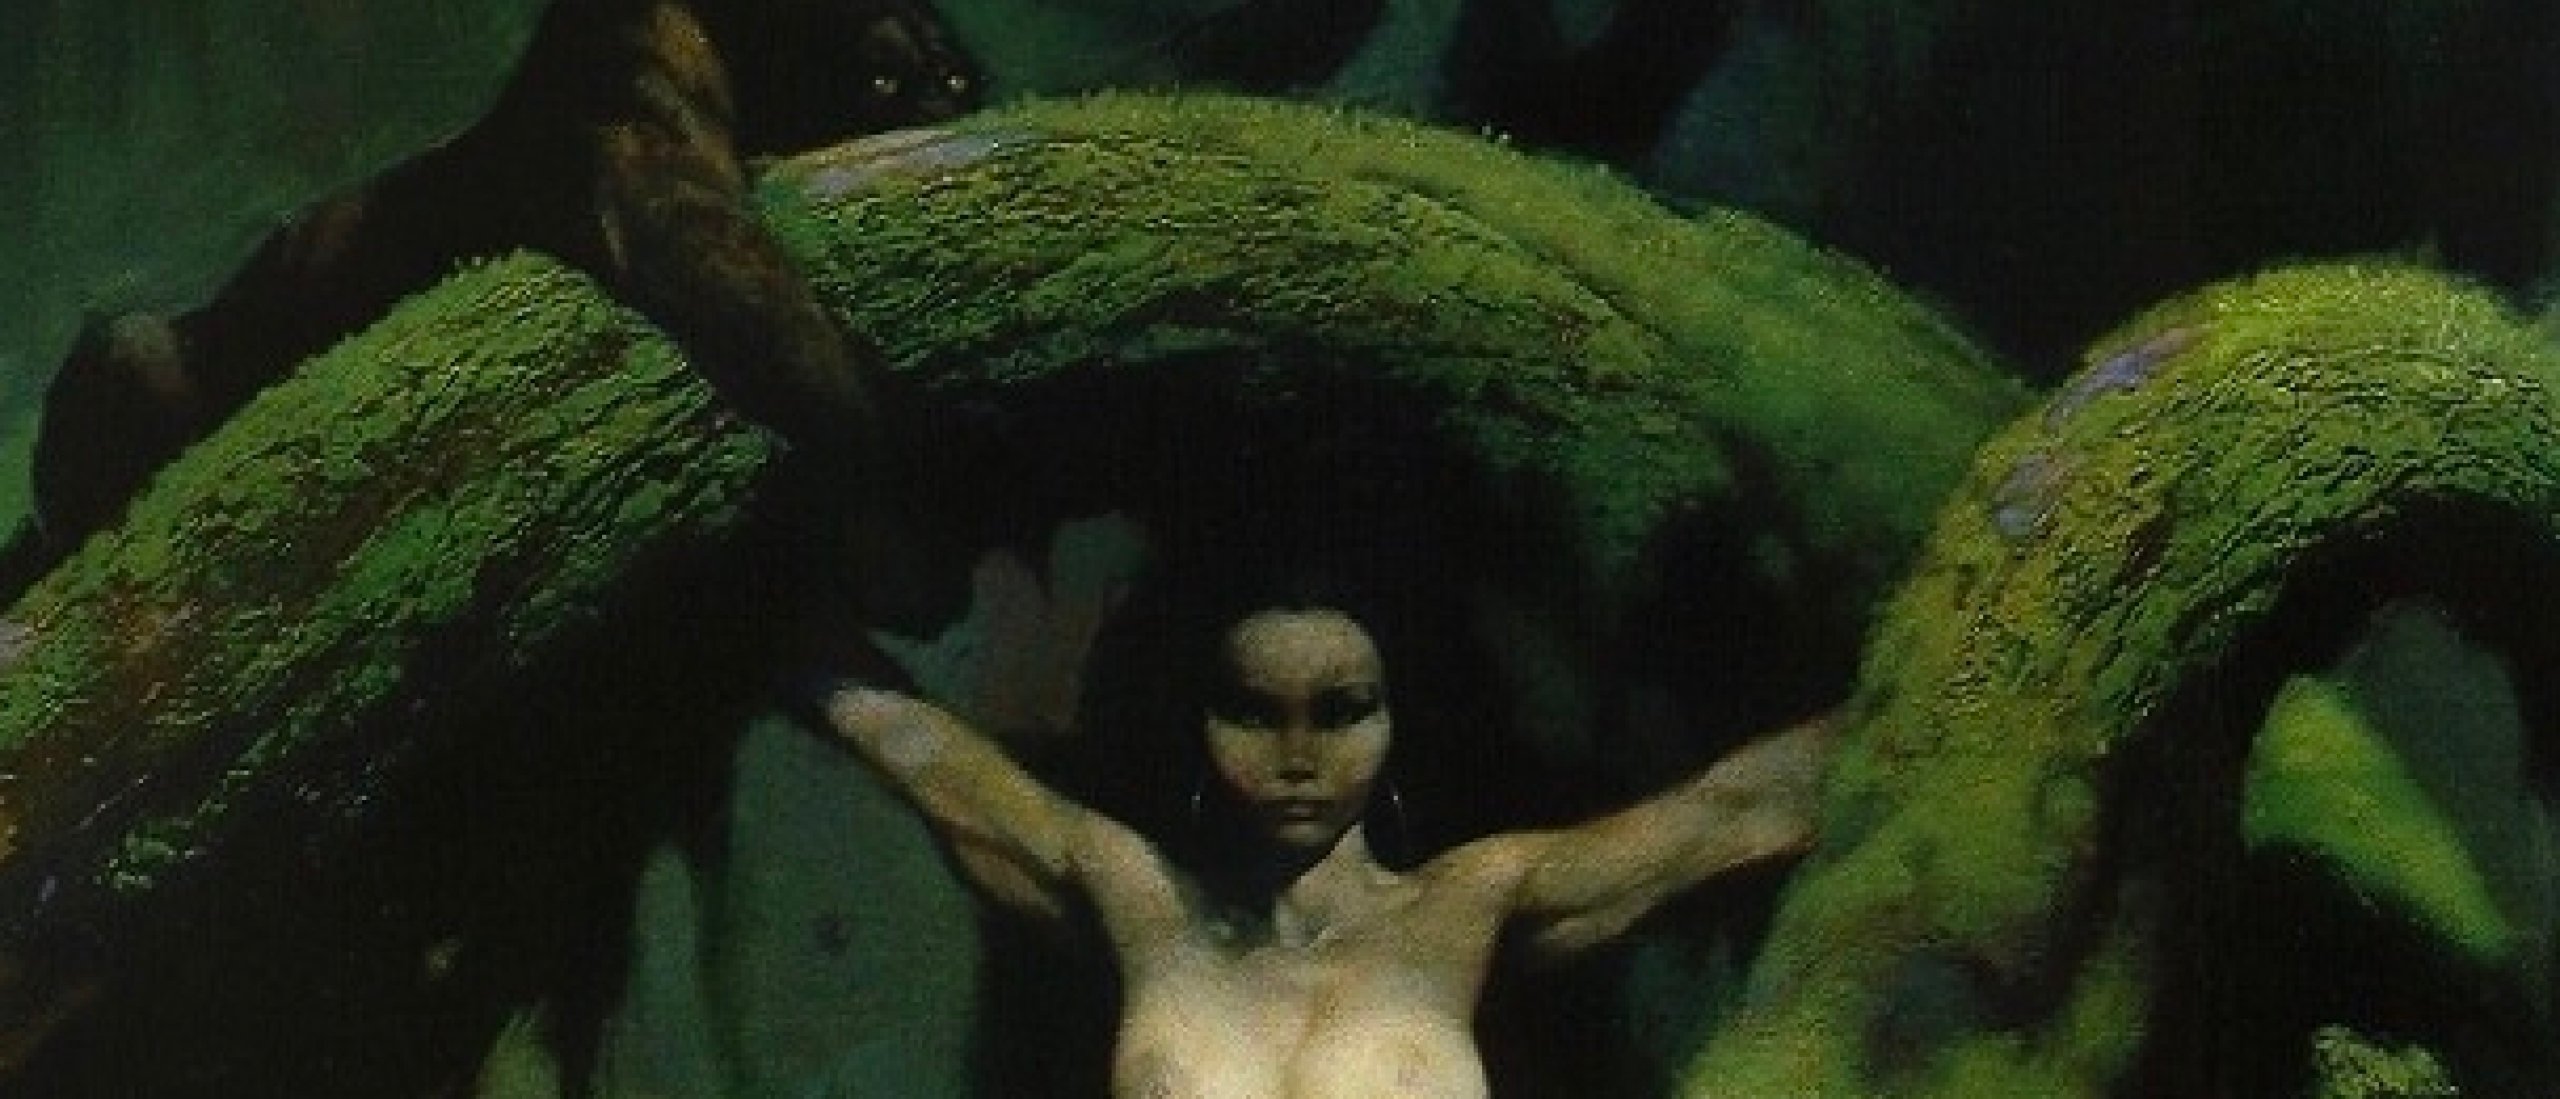 The Ravishing Erotica by the Master of Fantasy Frank Frazetta